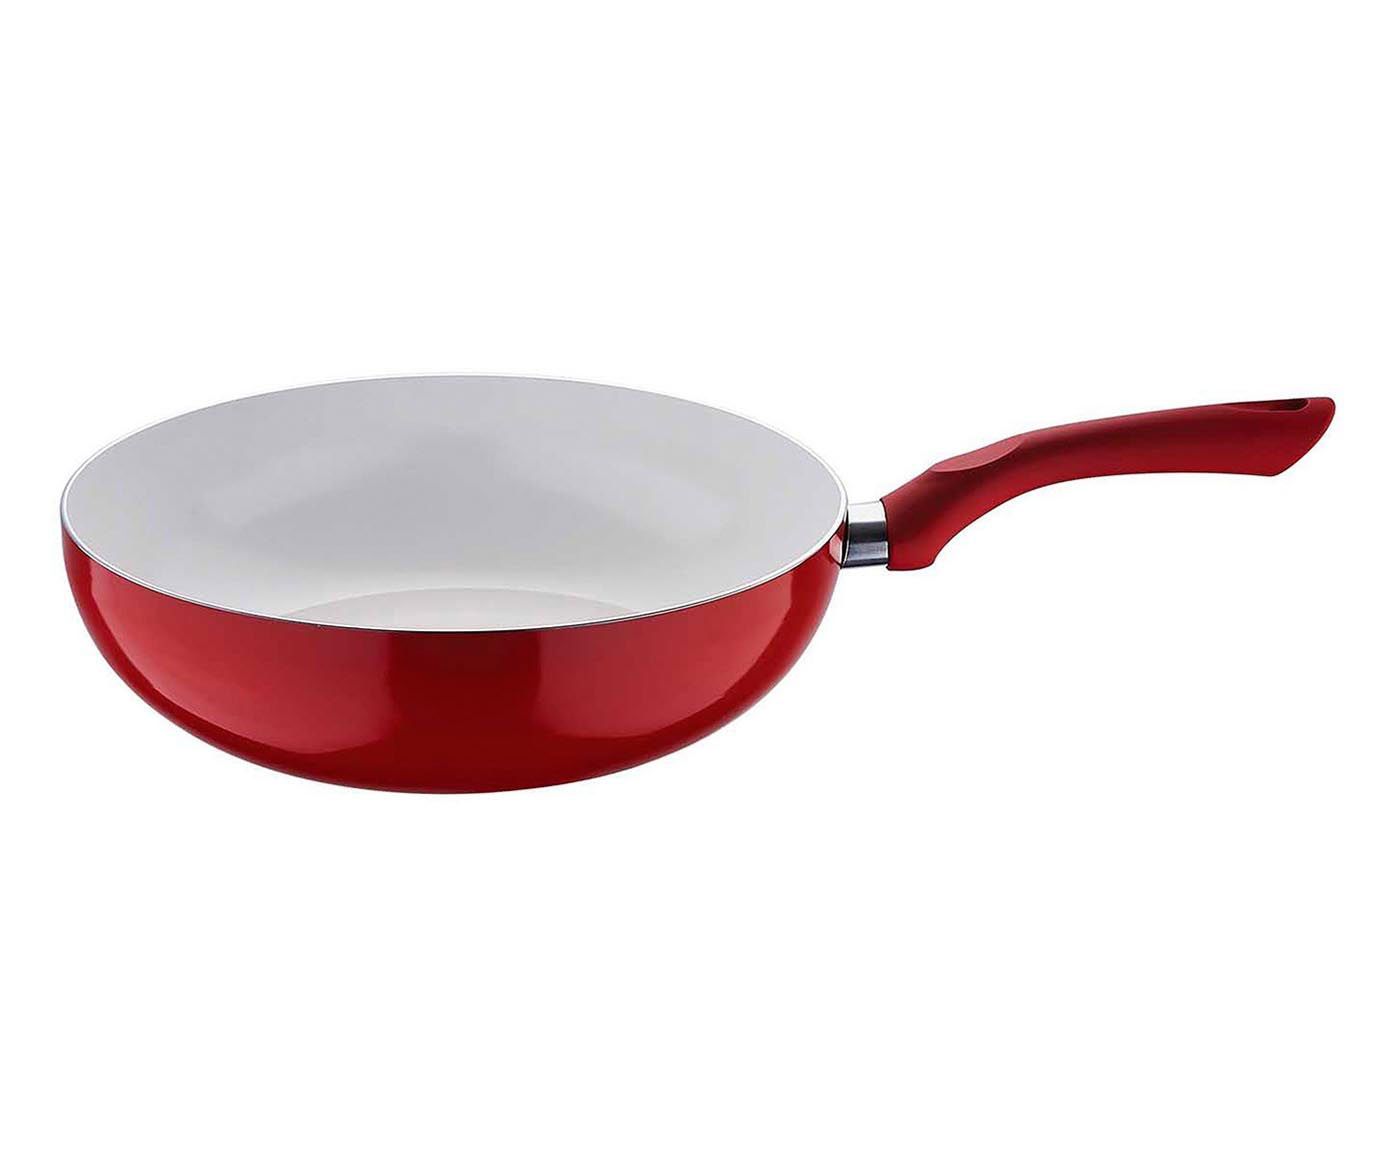 Frigideira wok ultra rouge kaiserhoff - 28cm | Westwing.com.br